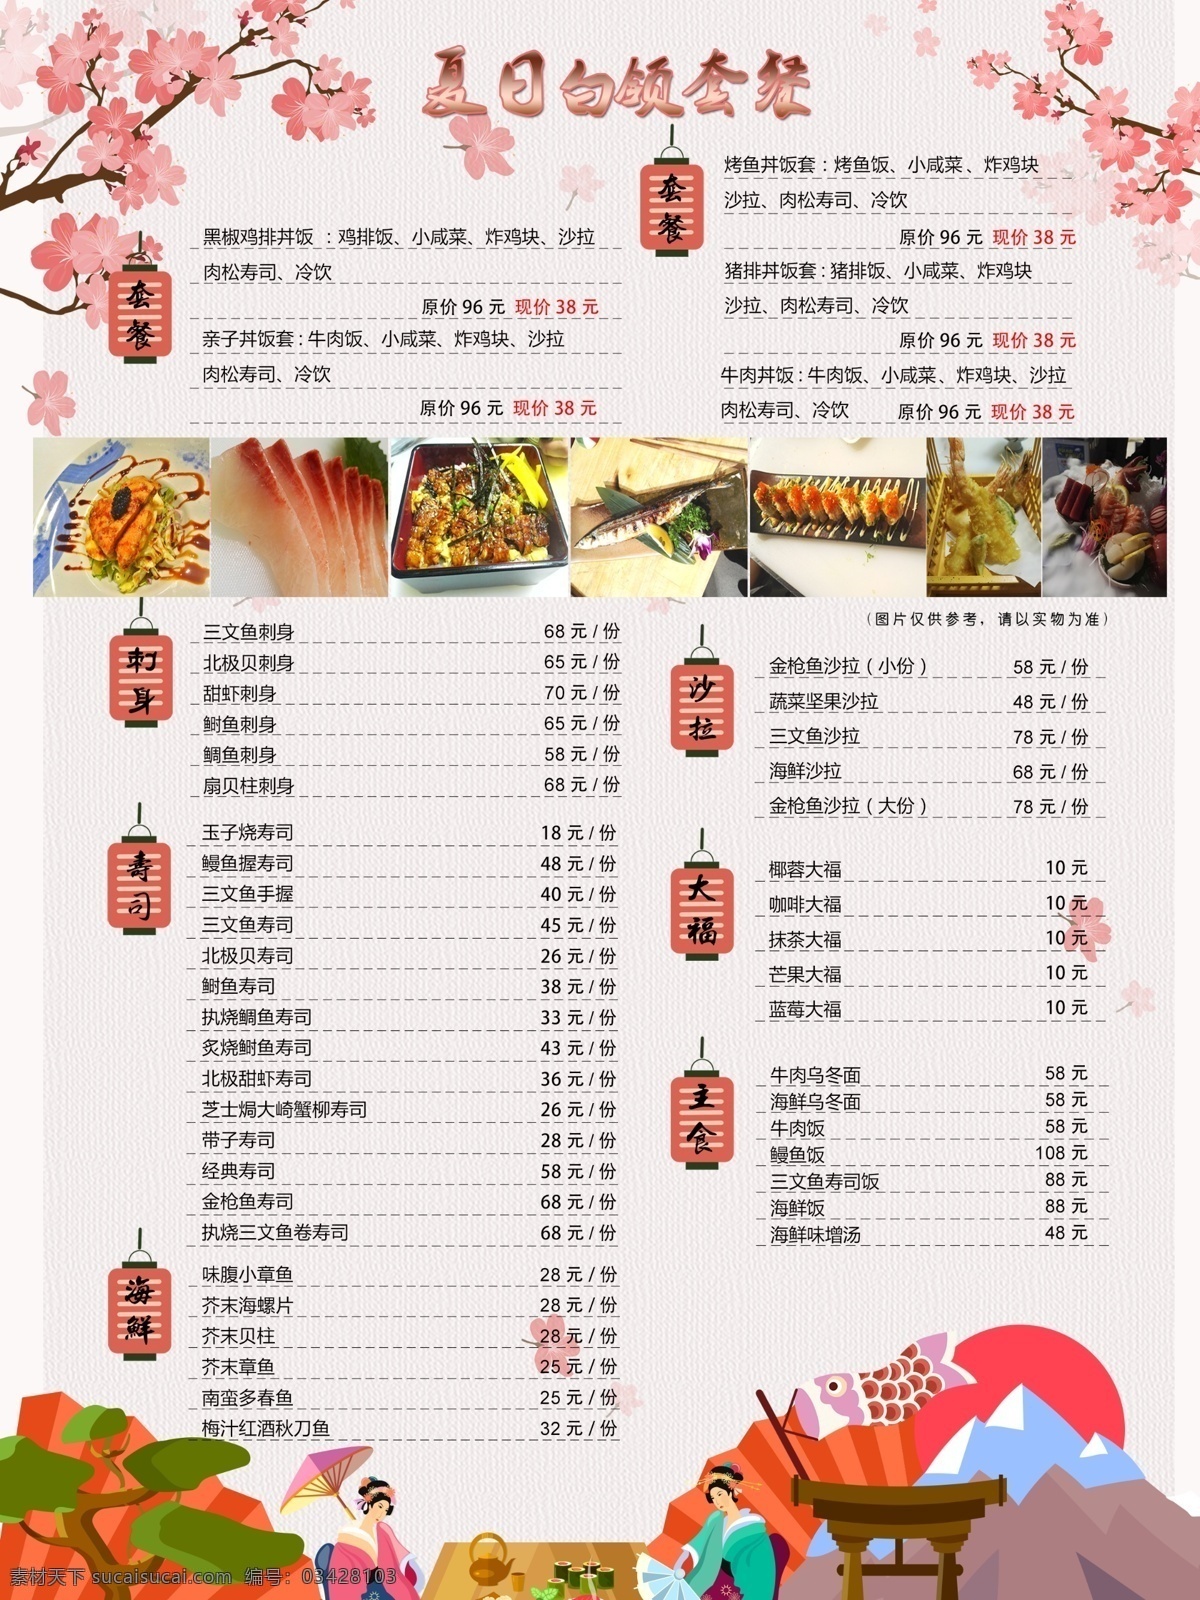 日式料理 日式 料理 菜单 宣传单 海报 菜单菜谱